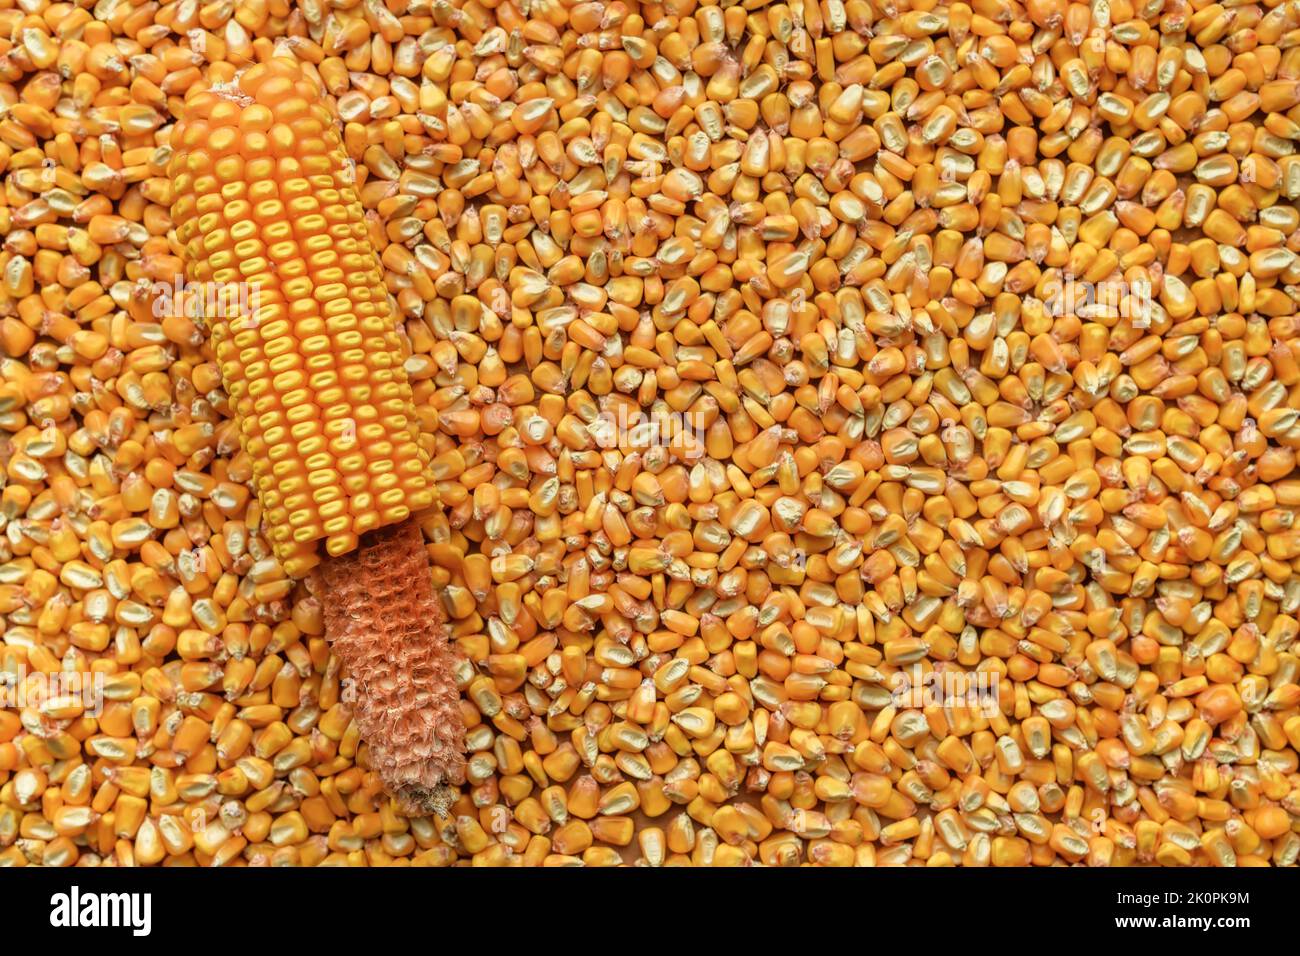 Récolte de grains de maïs décortiqués détachés de l'épi, vue de dessus Banque D'Images